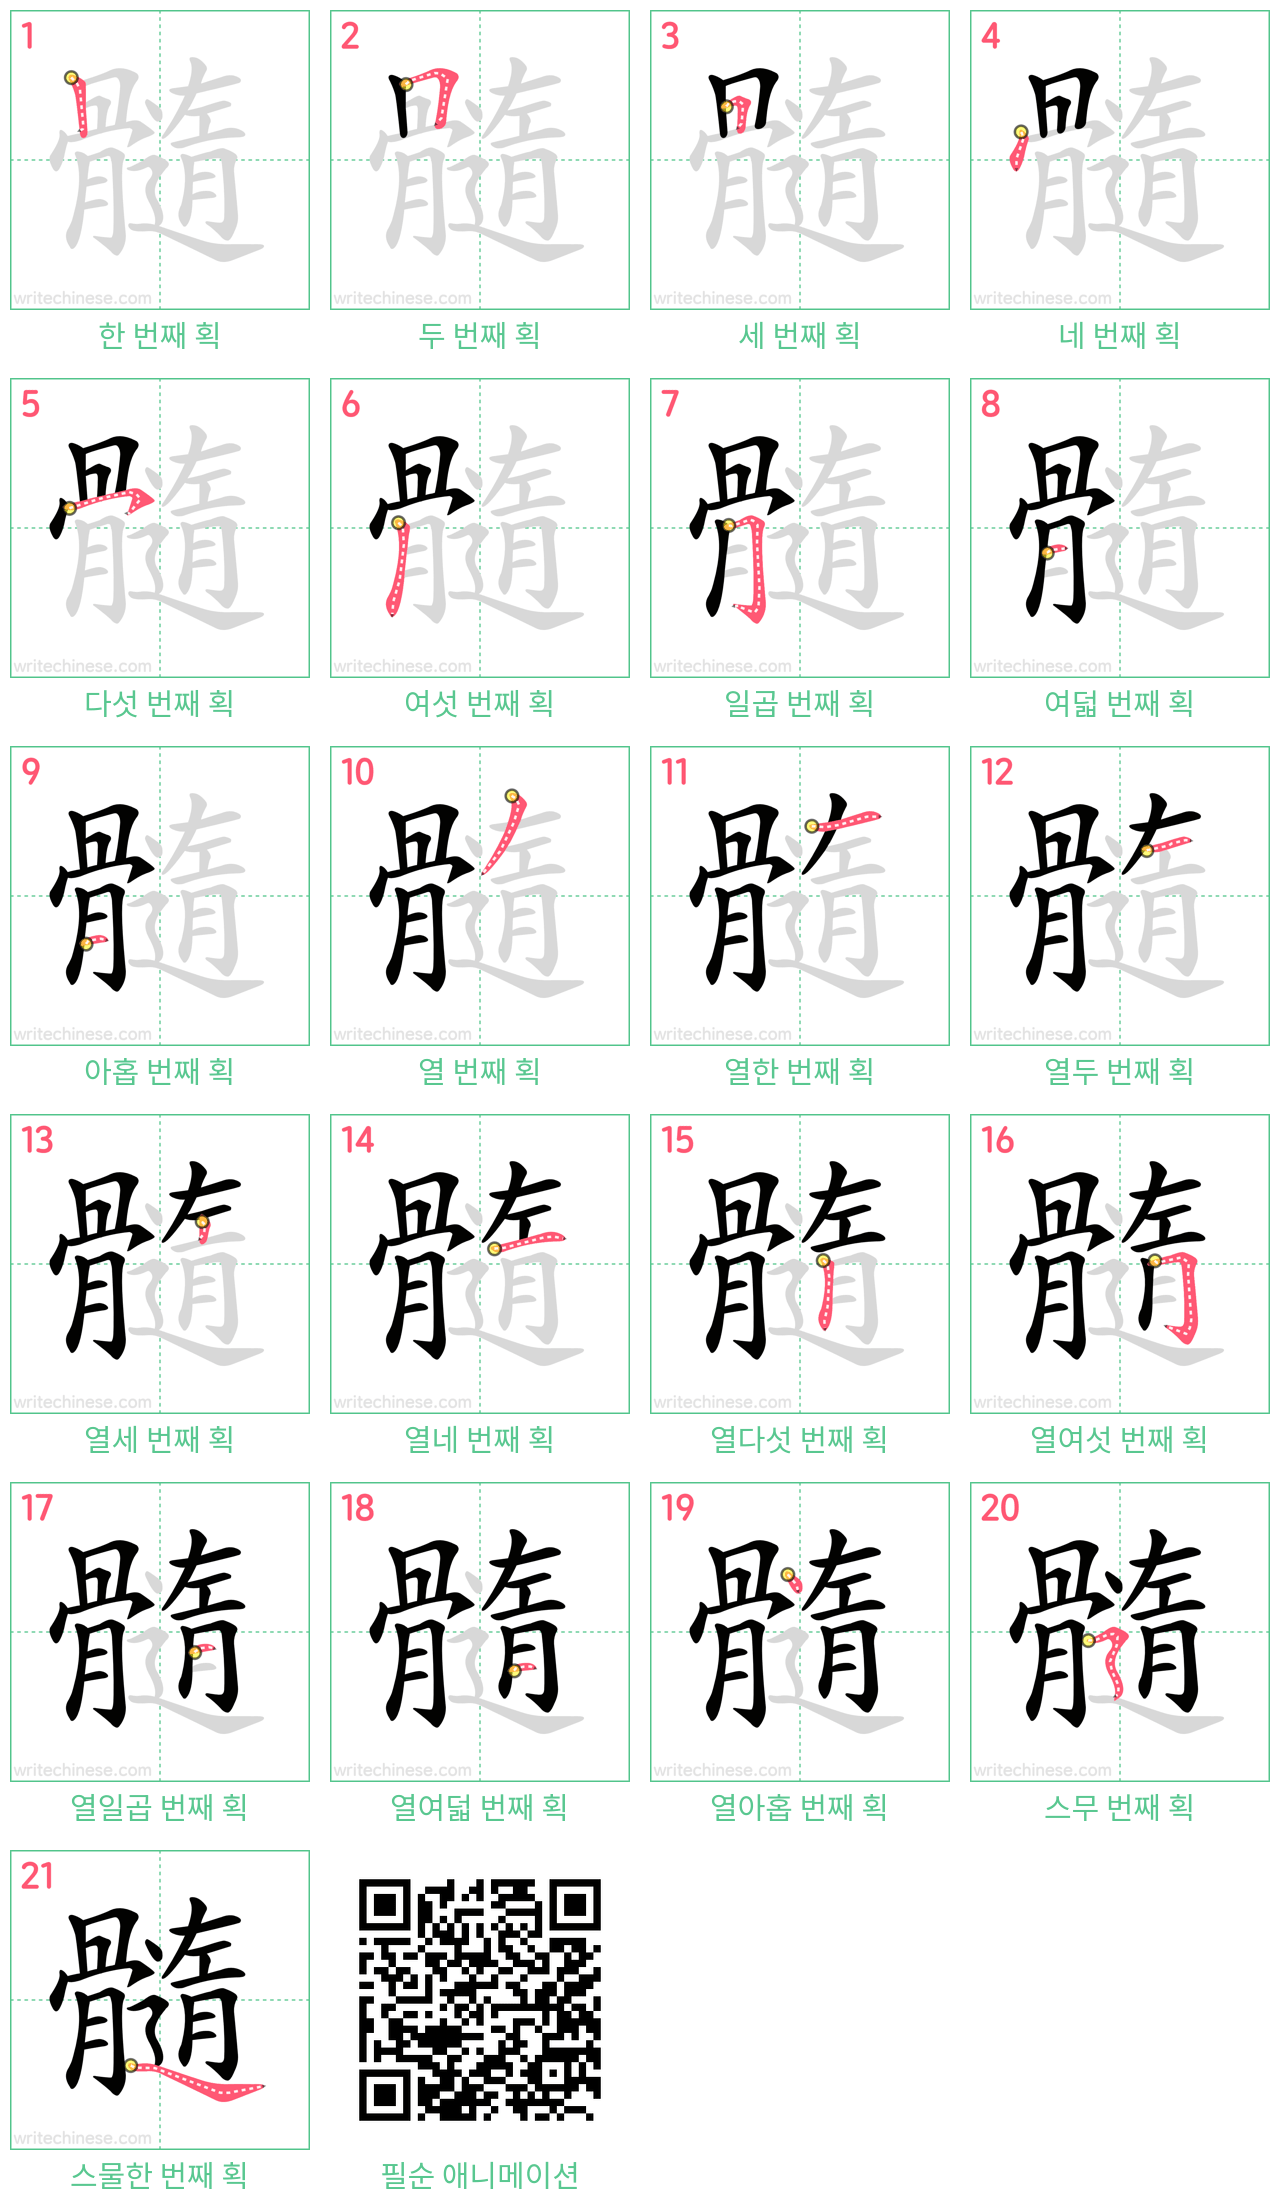 髓 step-by-step stroke order diagrams